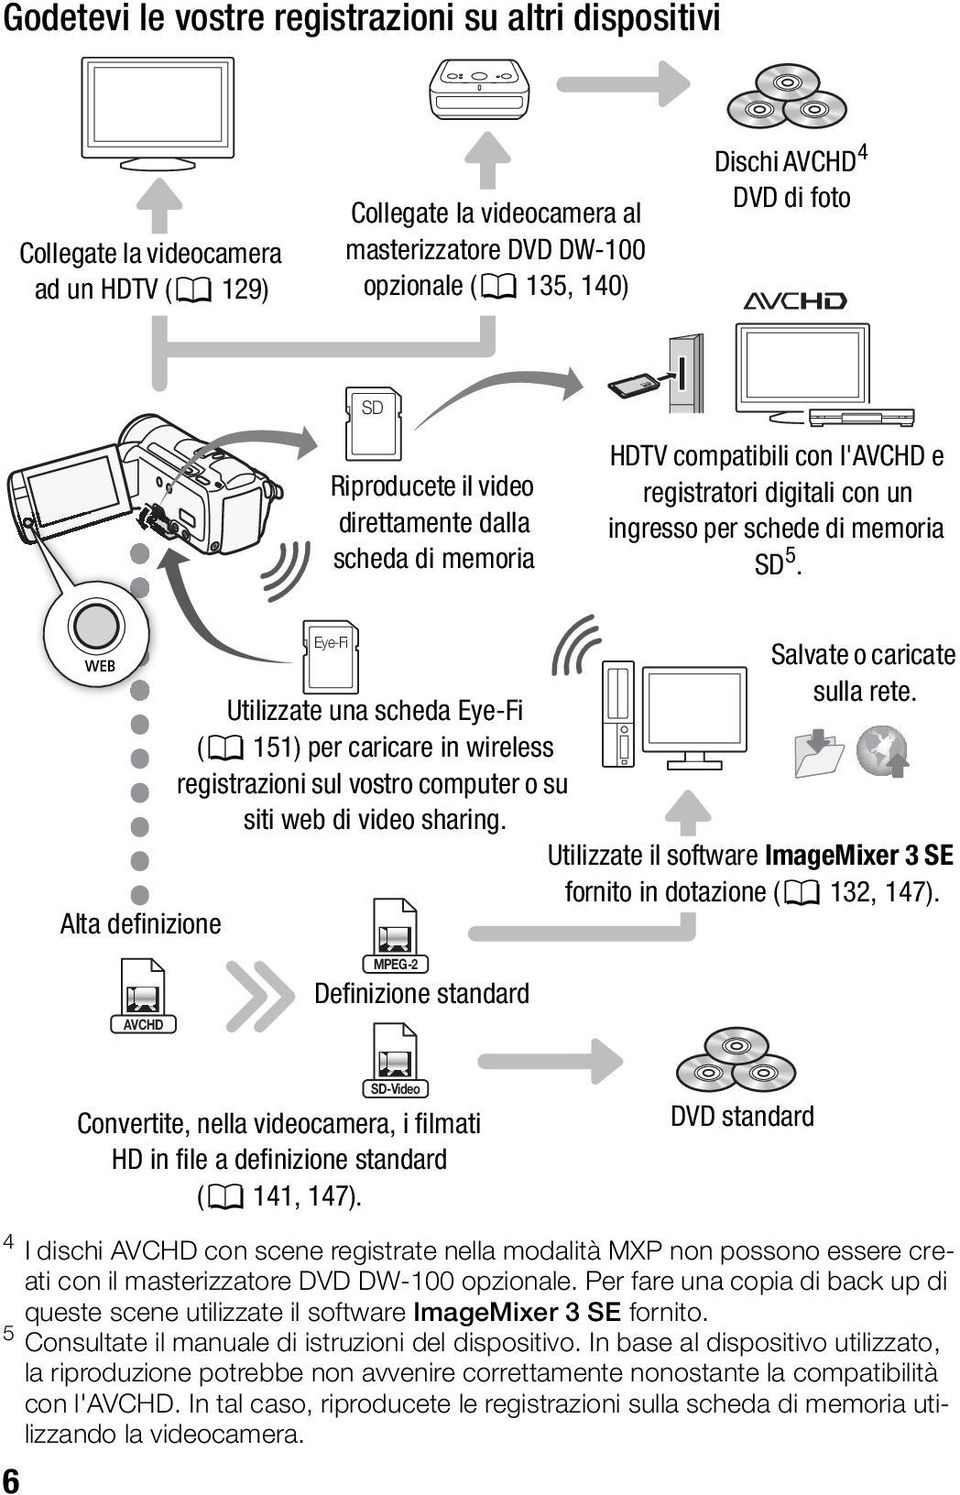 Alta definizione Eye-Fi Utilizzate una scheda Eye-Fi (0 151) per caricare in wireless registrazioni sul vostro computer o su siti web di video sharing. Salvate o caricate sulla rete.